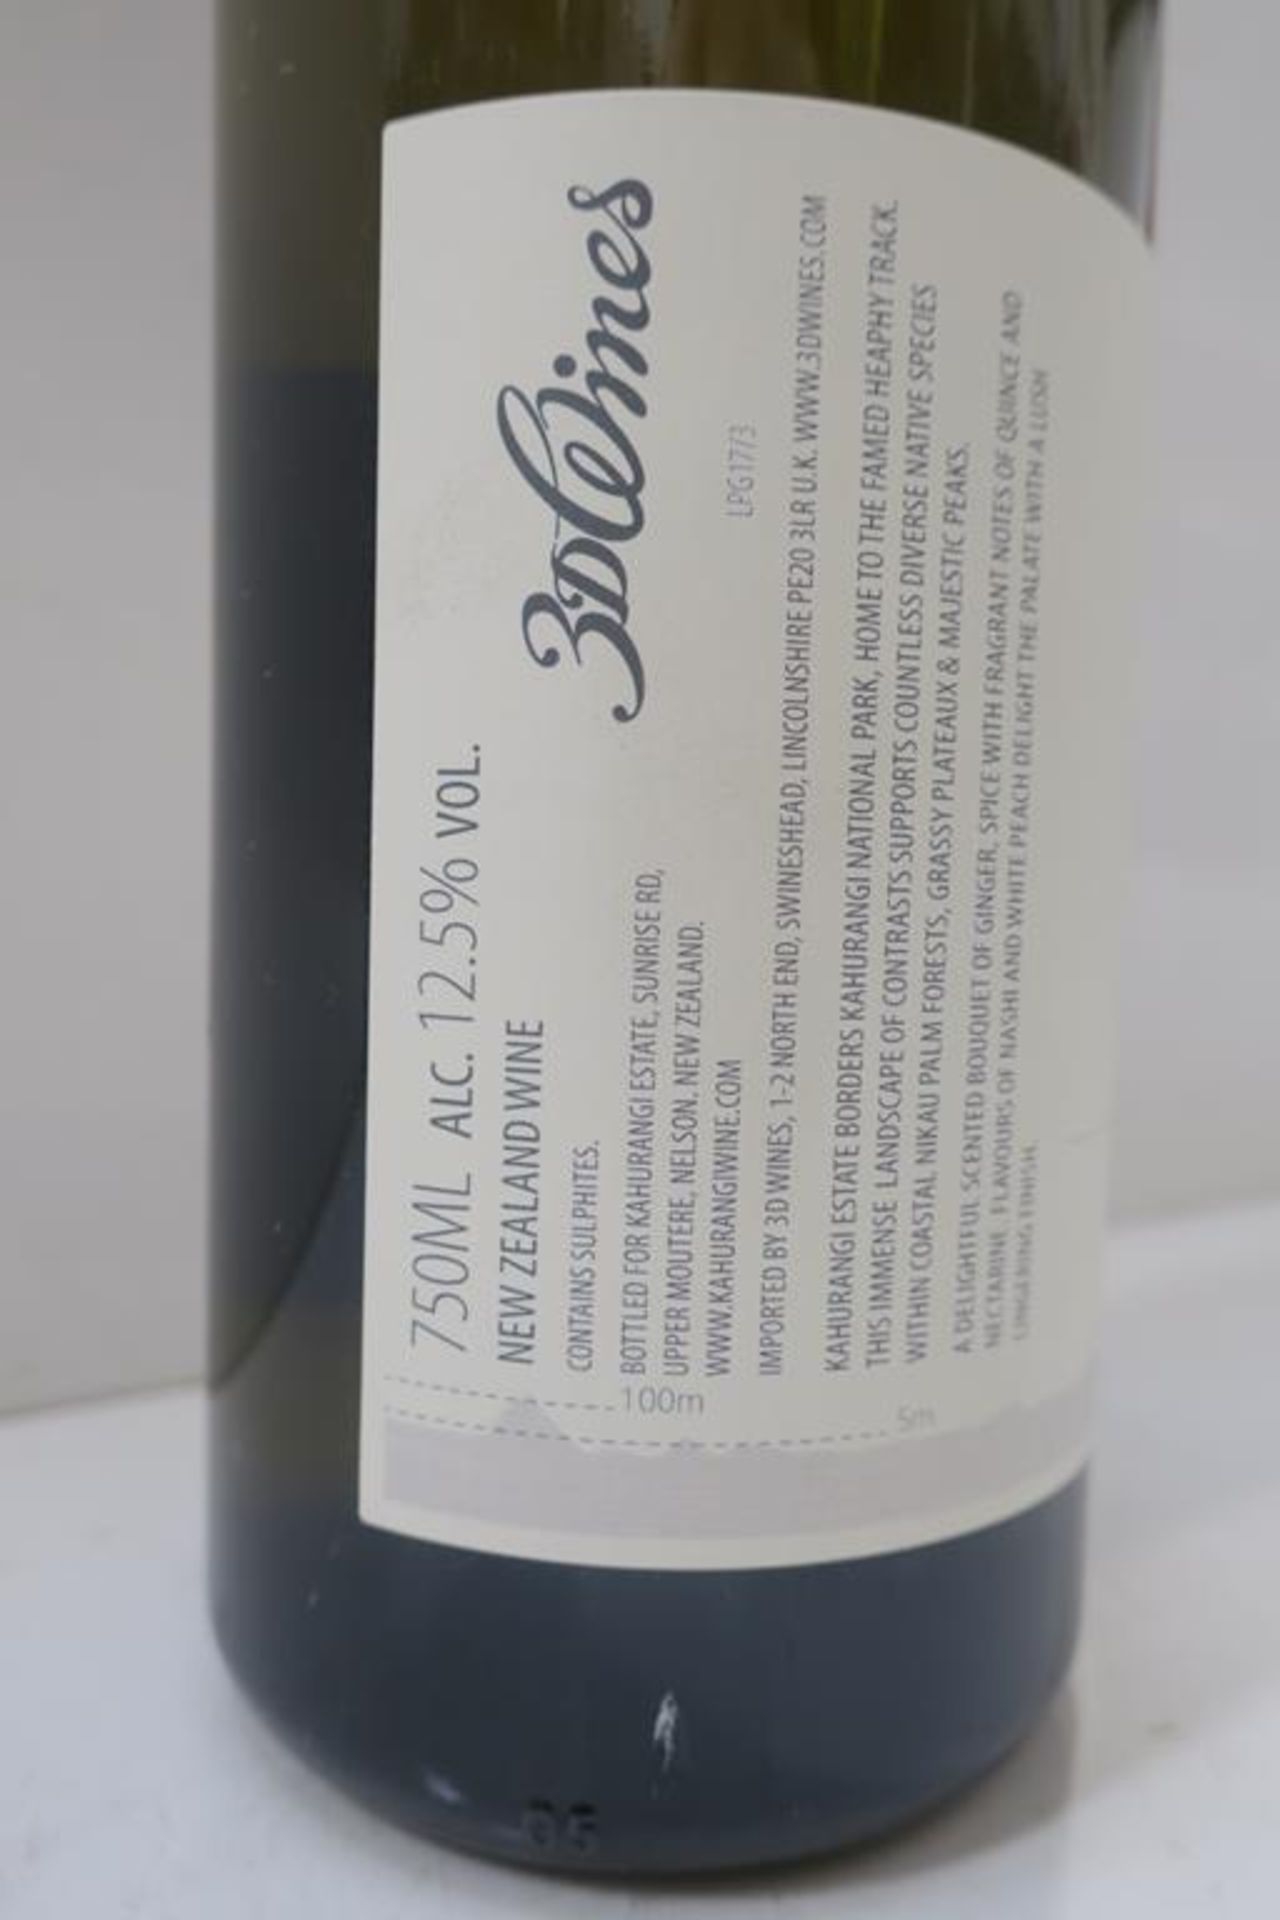 12 X Bottles of Kahurangi Estate 2017 White Wine - Image 2 of 2